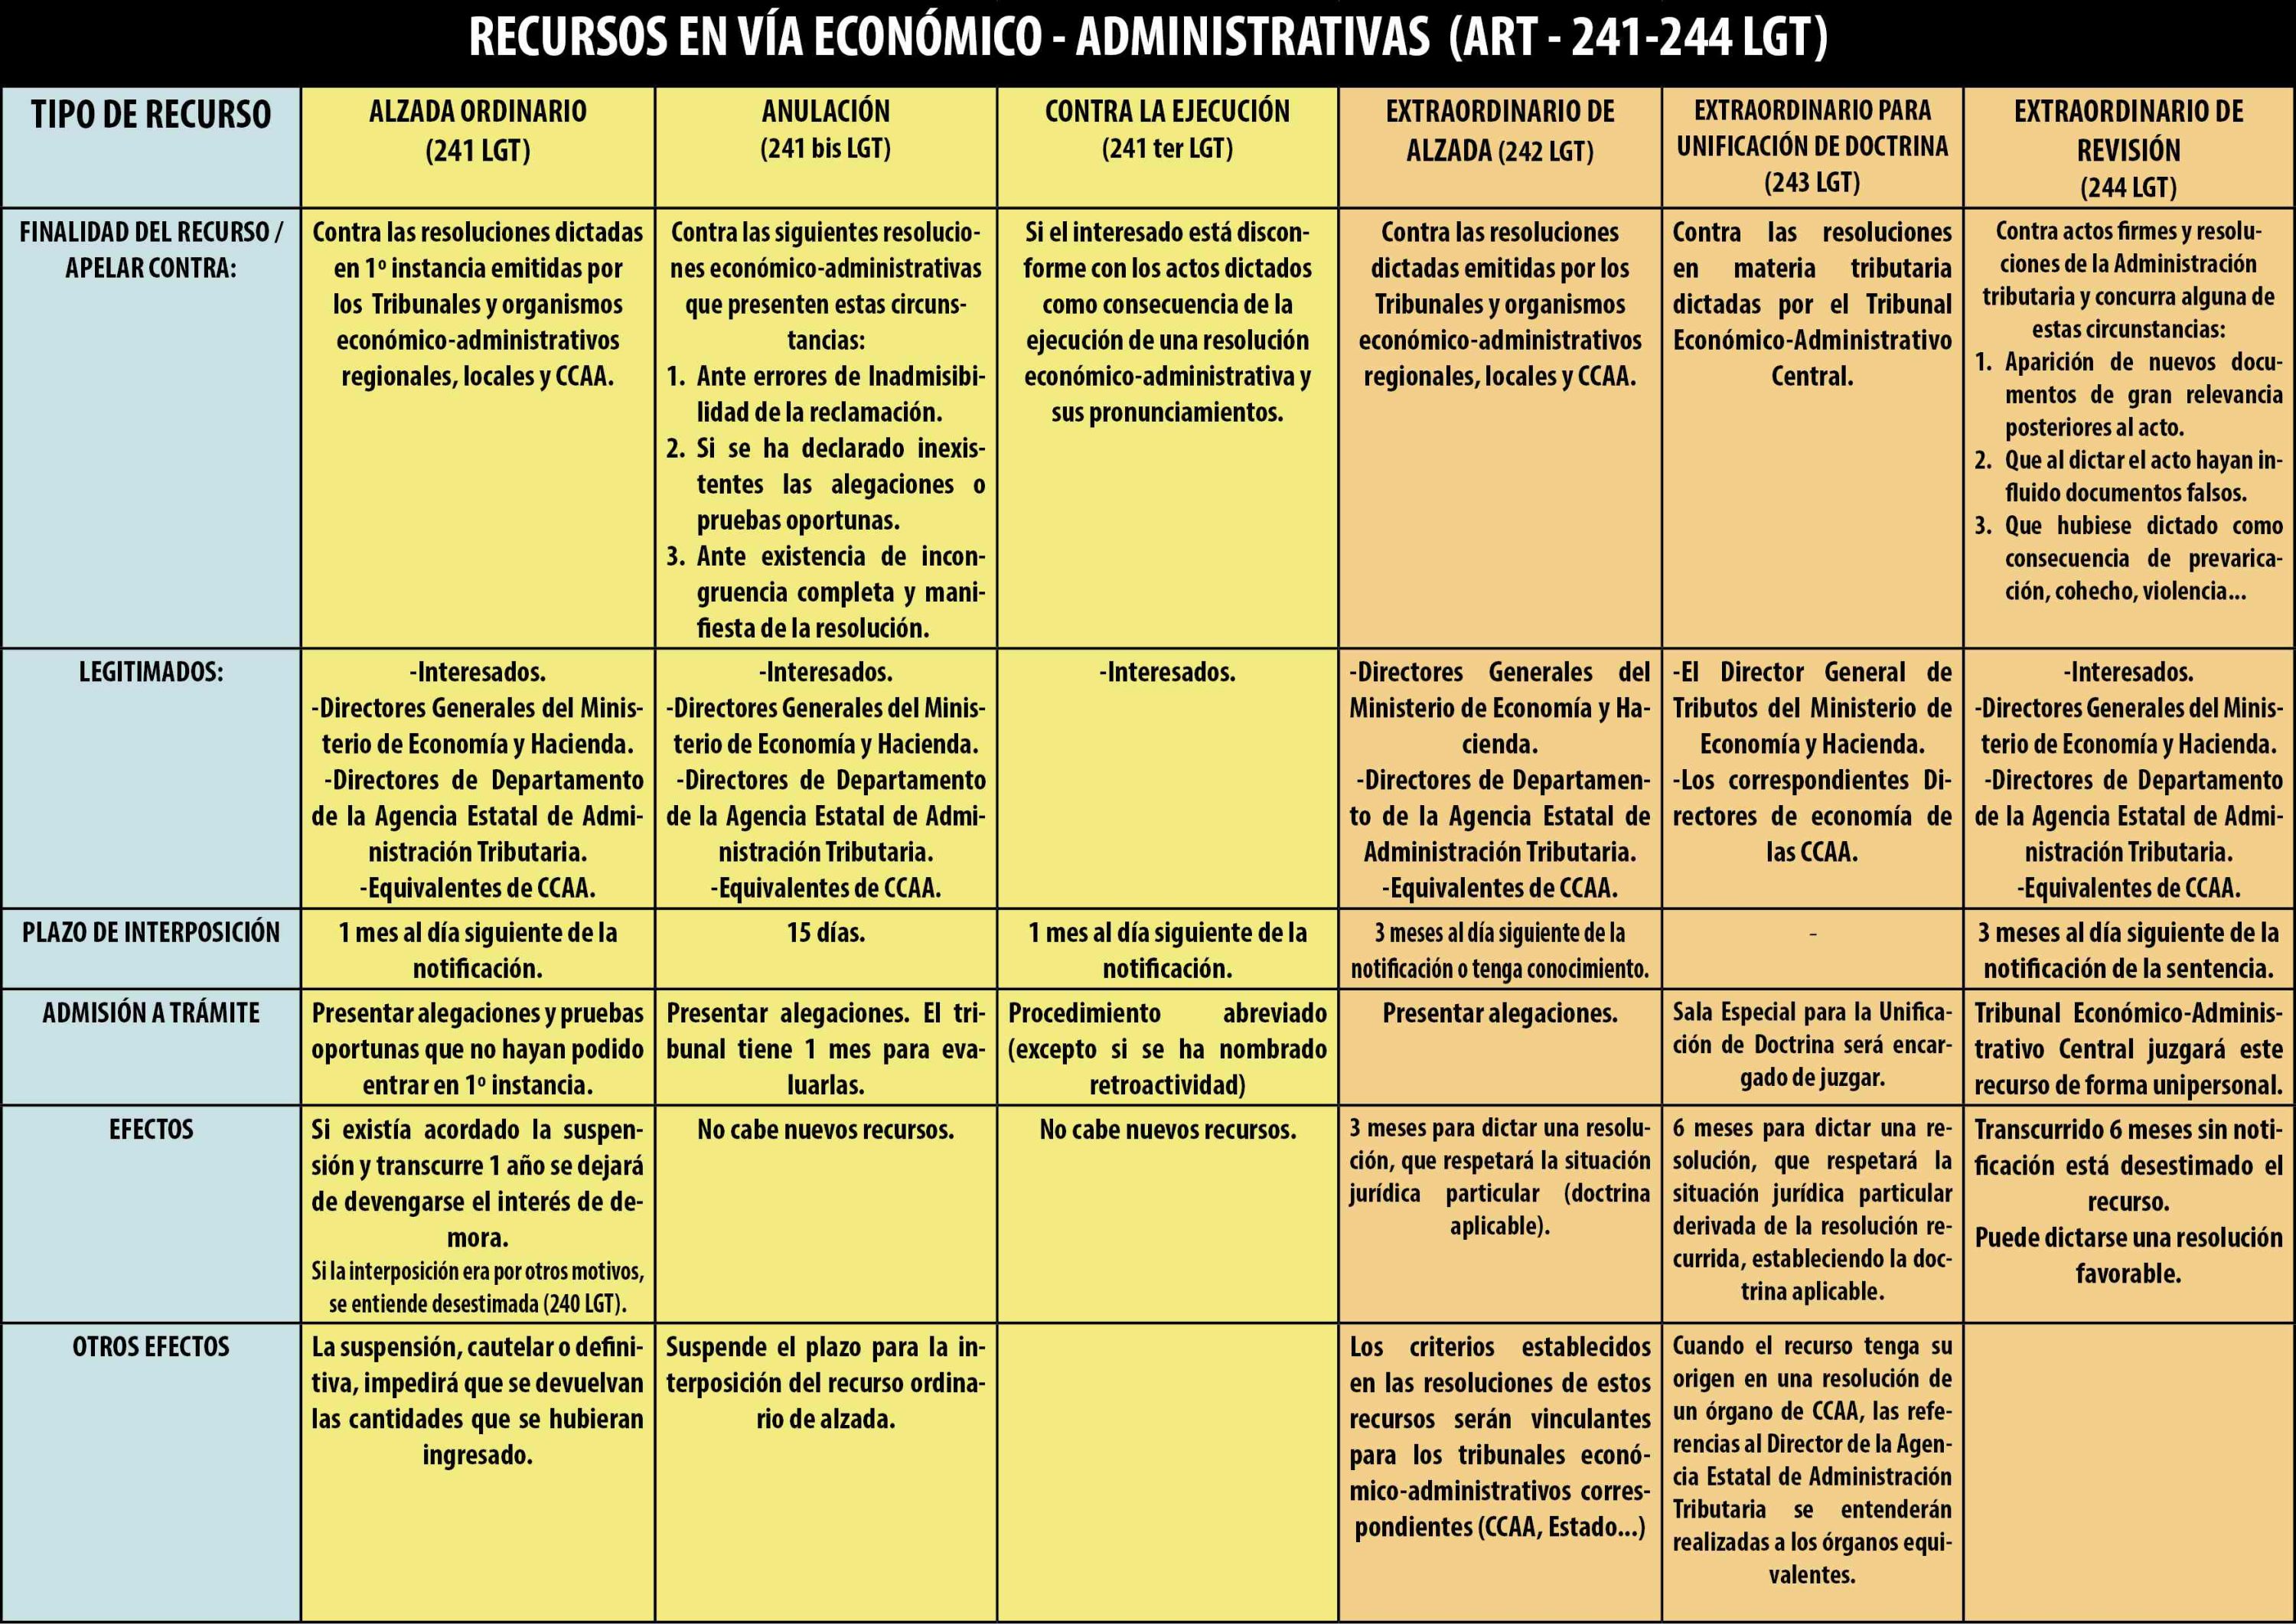 Recursos en vía económico - administrativo (ART - 241-244 LGT)